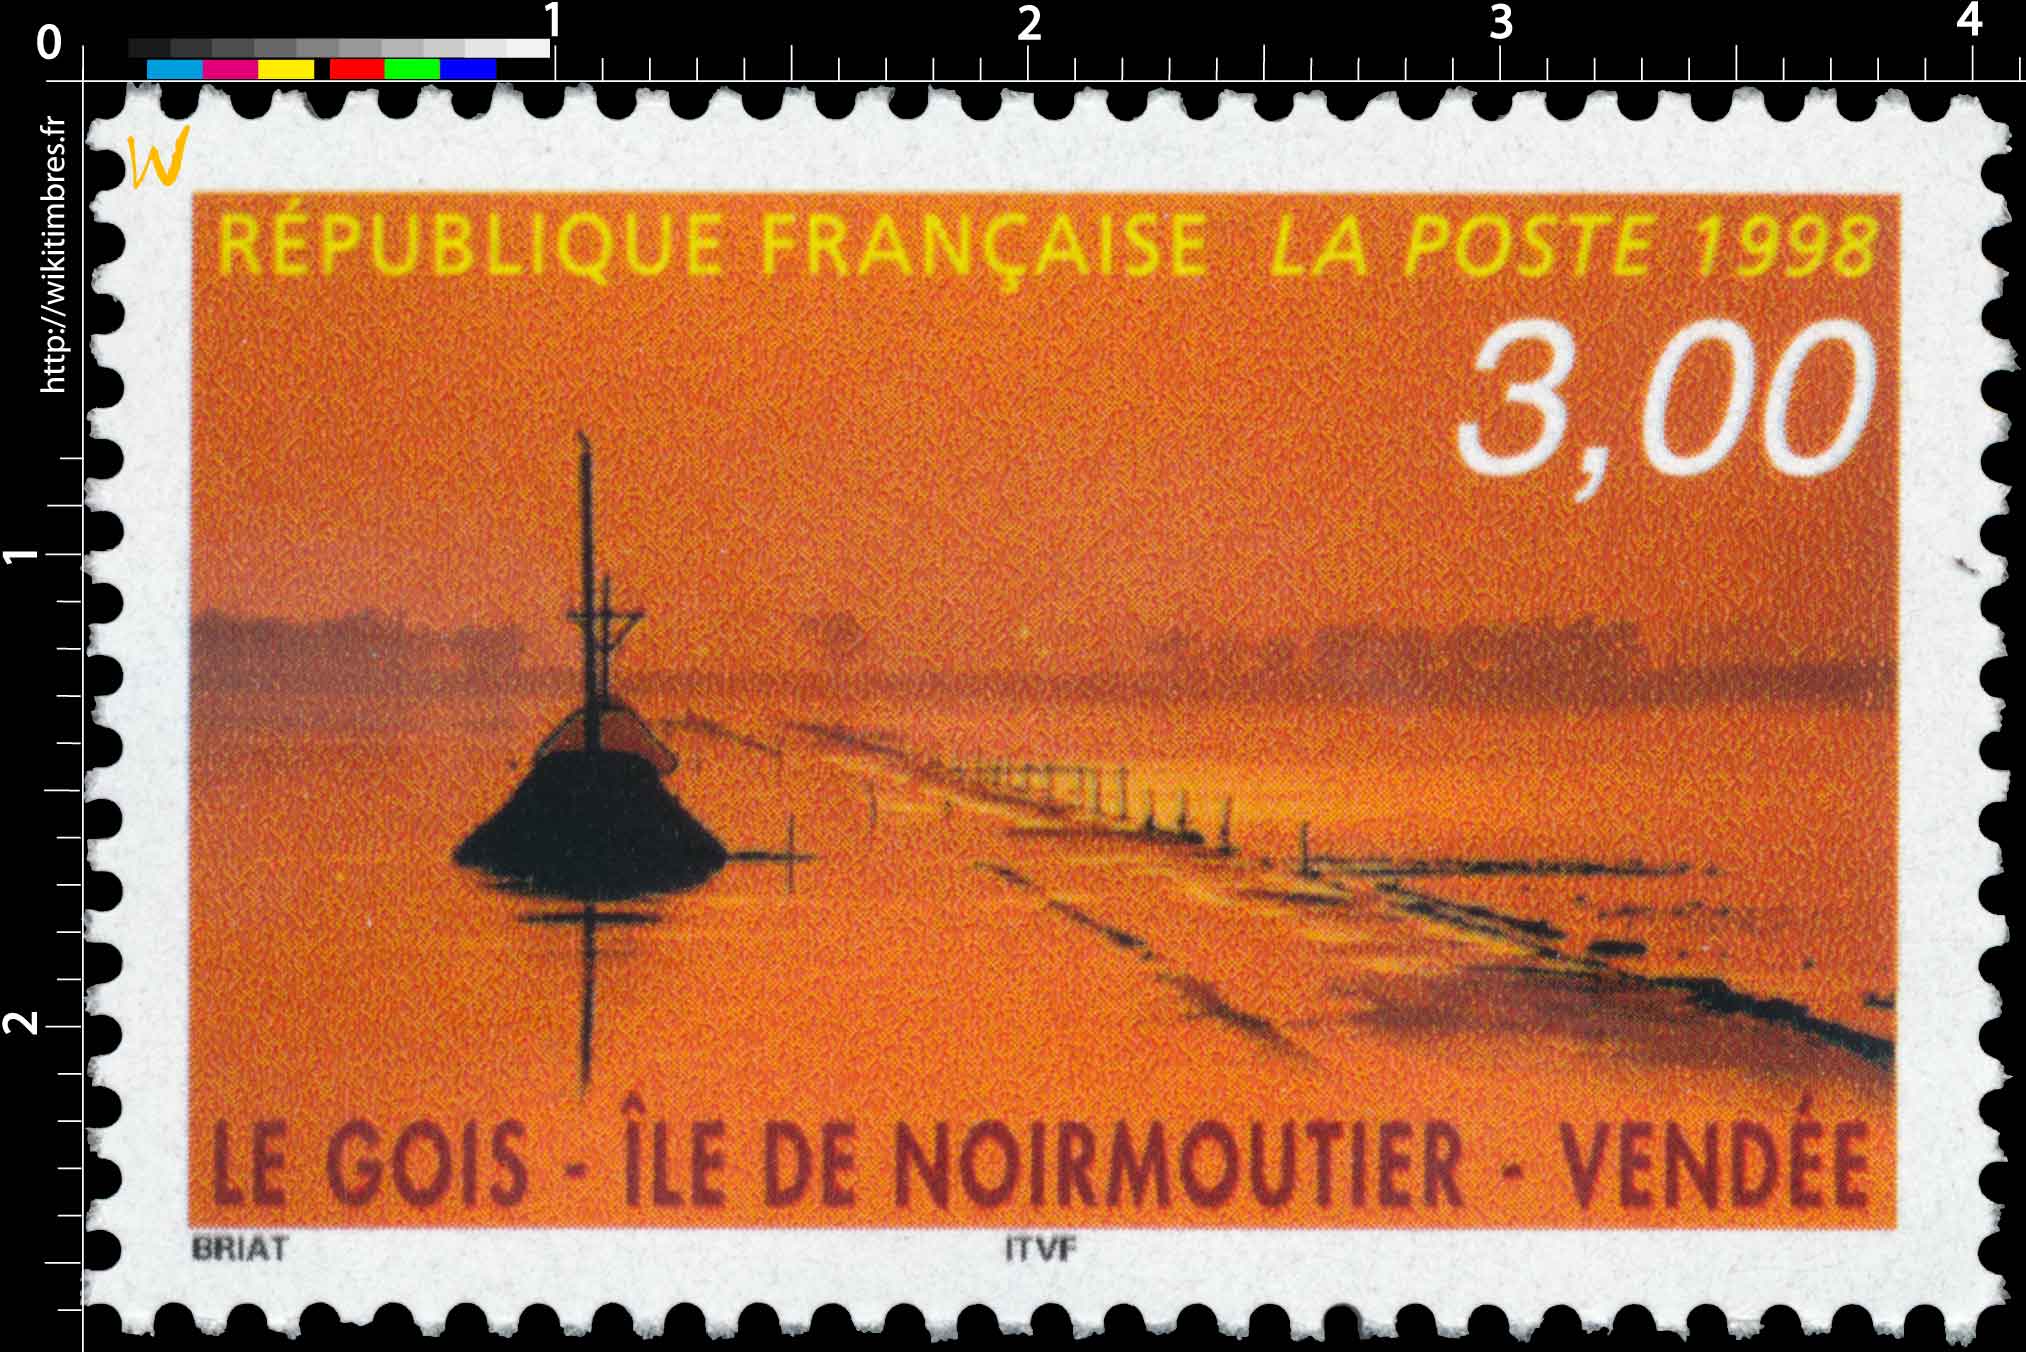 1998 LE GOIS - ÎLE DE NOIRMOUTIER - VENDÉE